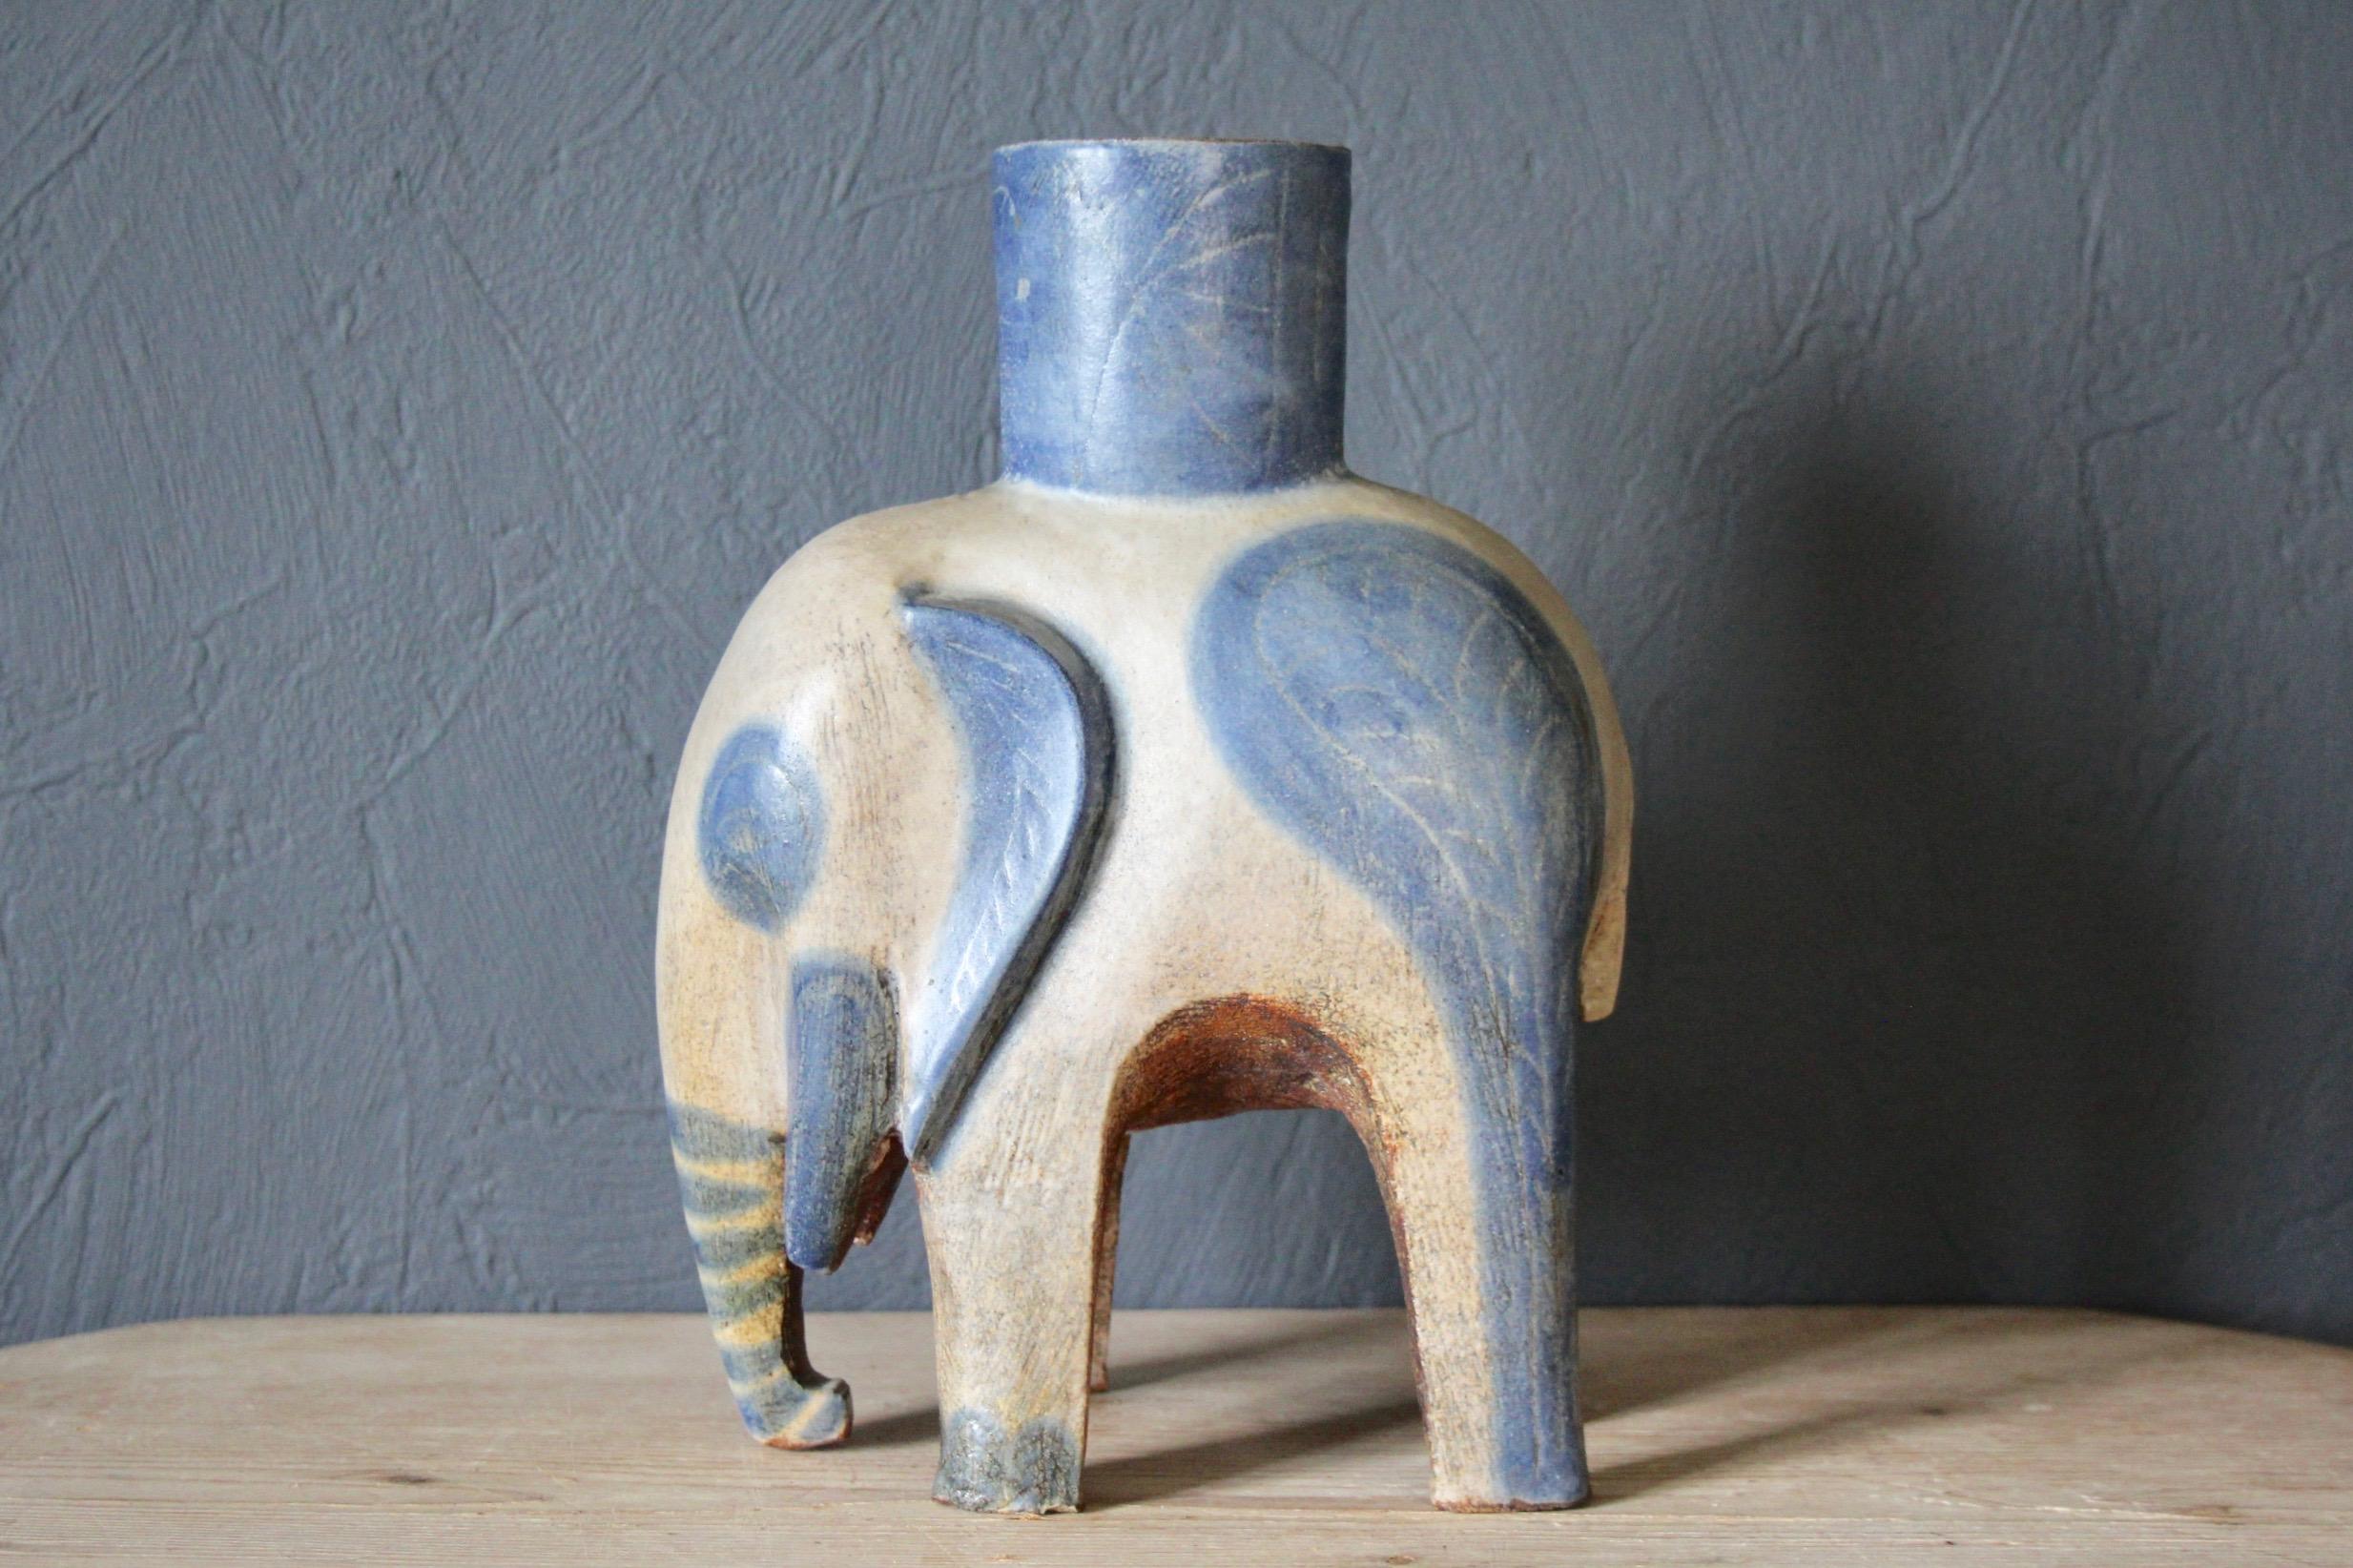 Blue and grey ceramic elephant.